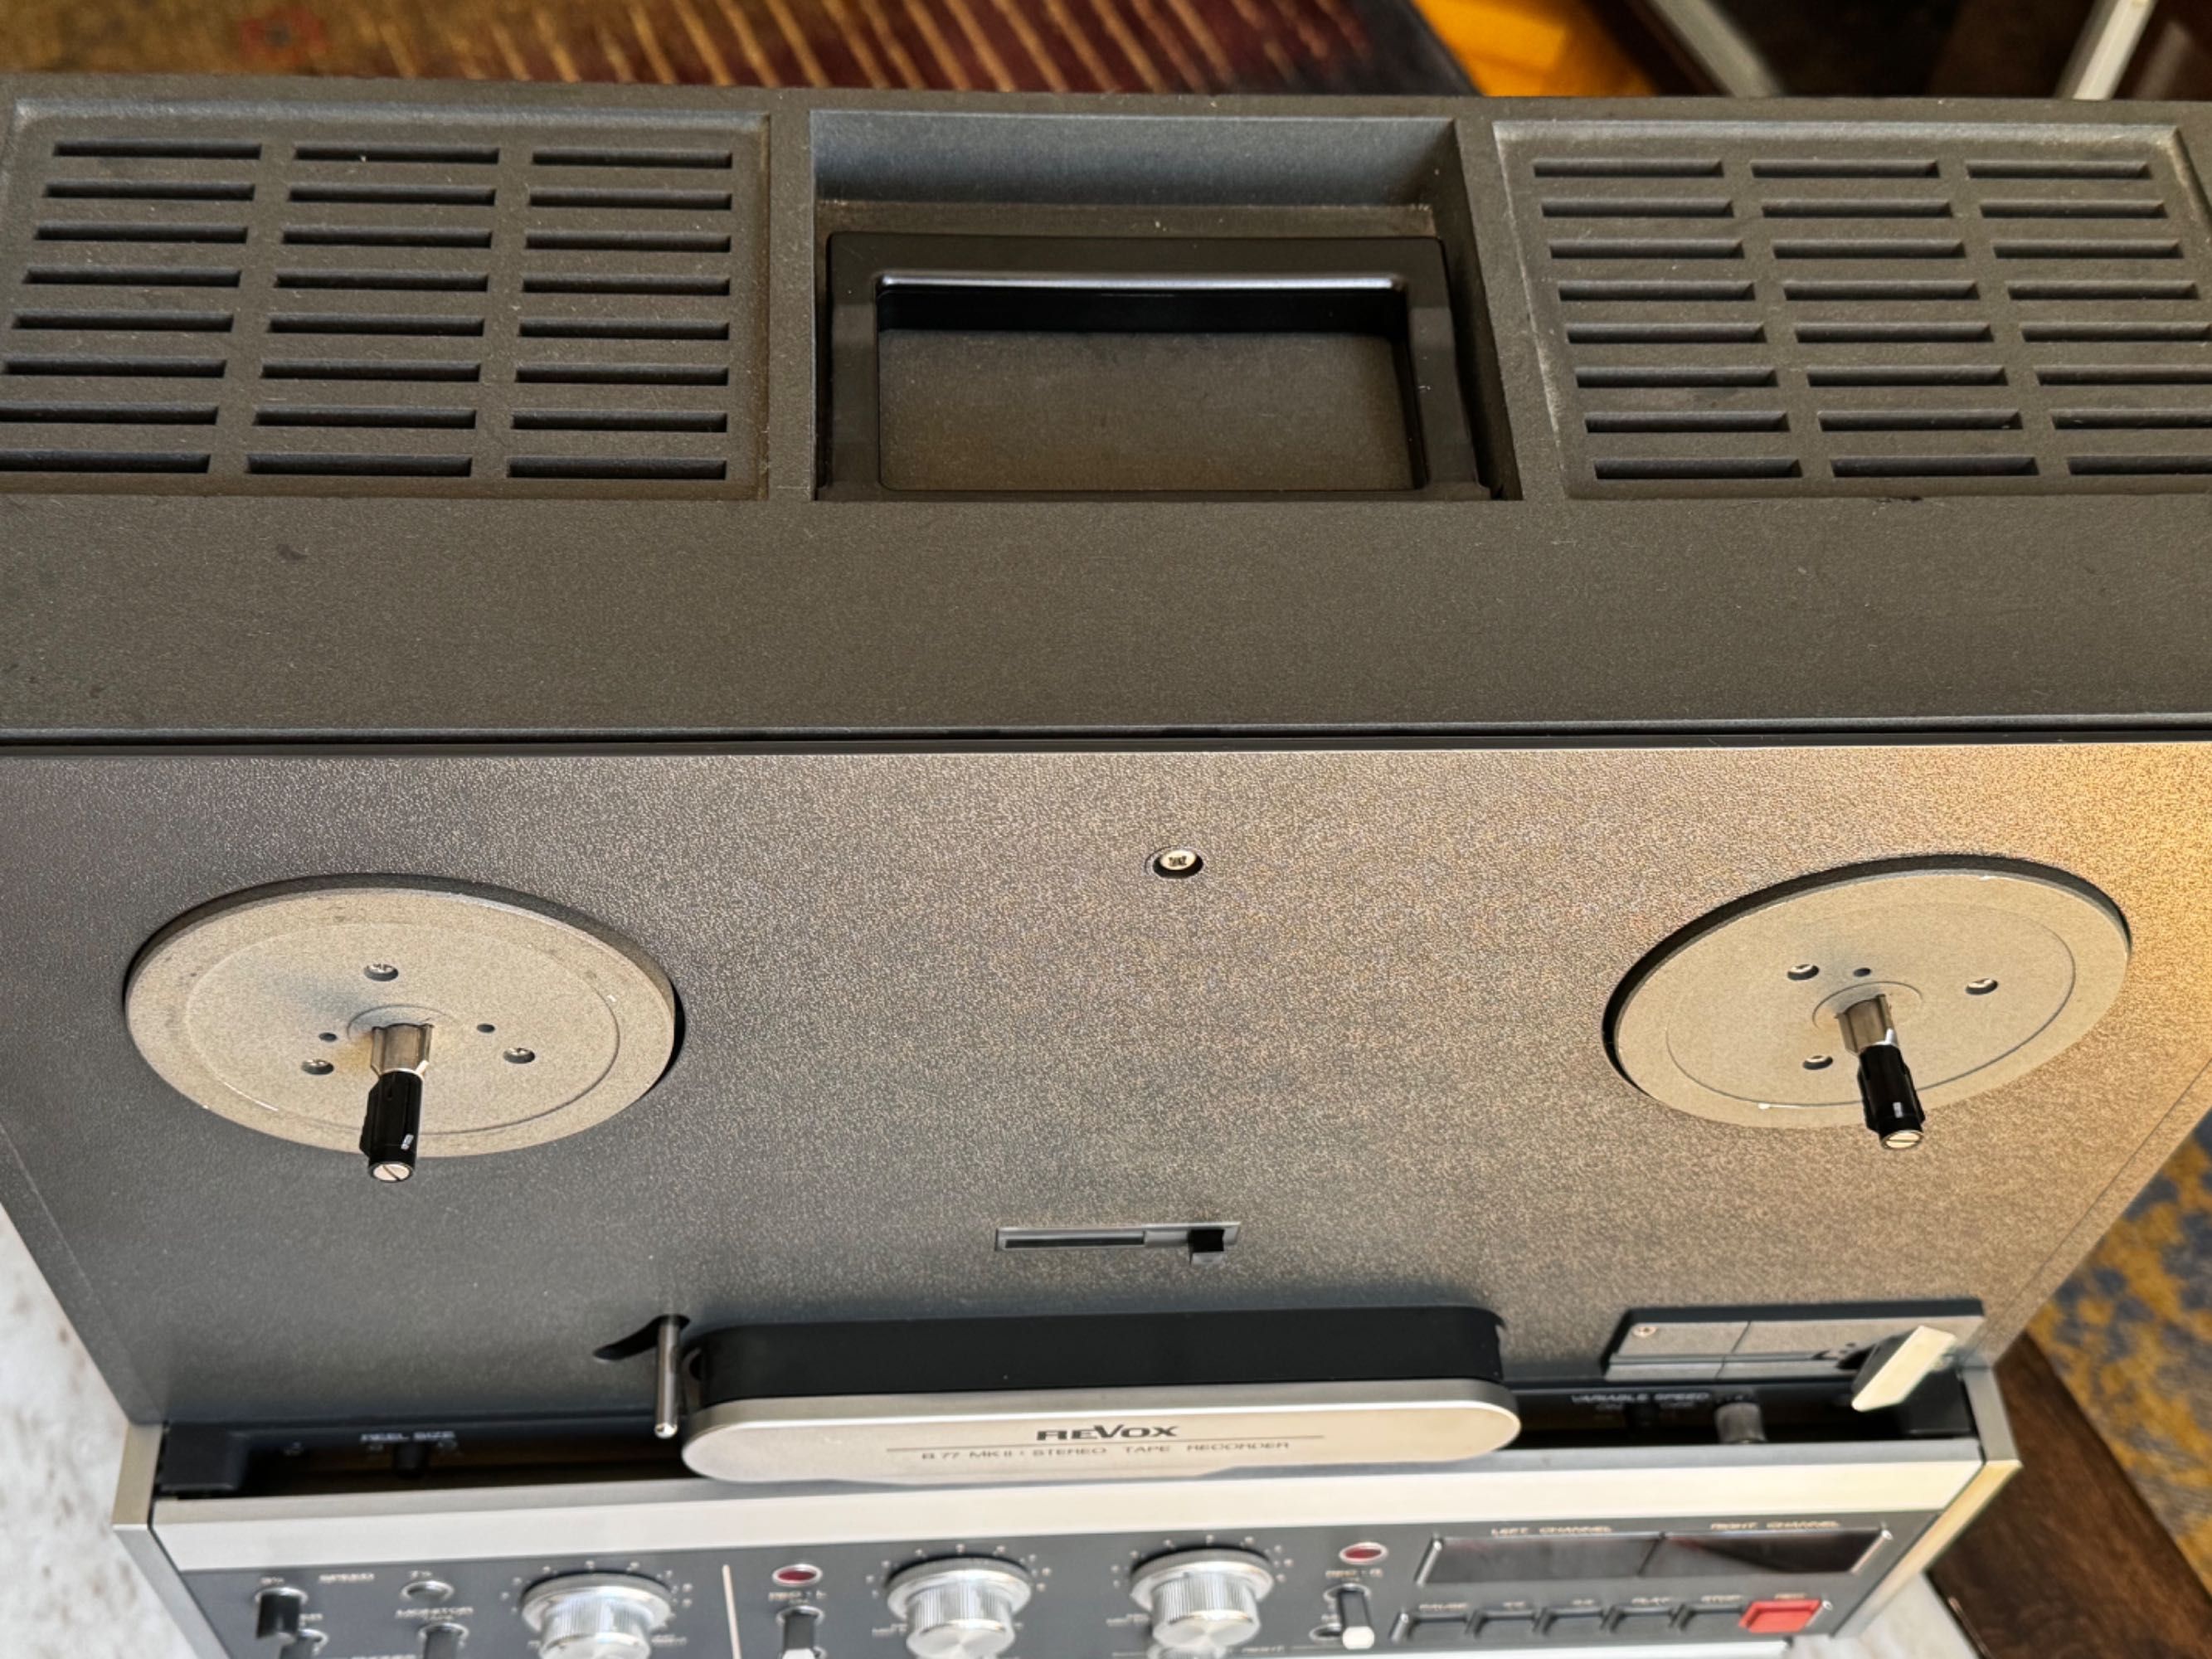 ReVox B77 magnetofon szpulowy, dwuścieżkowy, stereo. HiFi